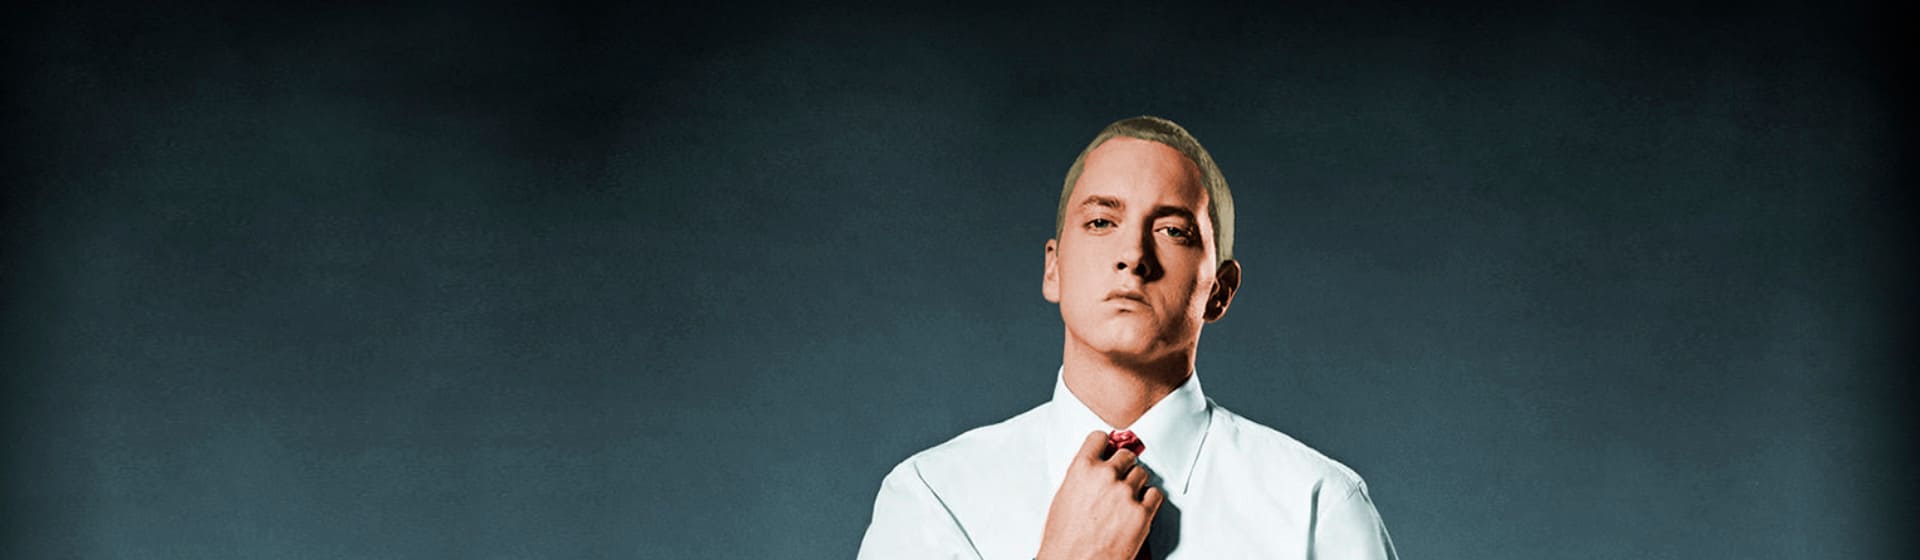 Eminem - Мерч и одежда с атрибутикой